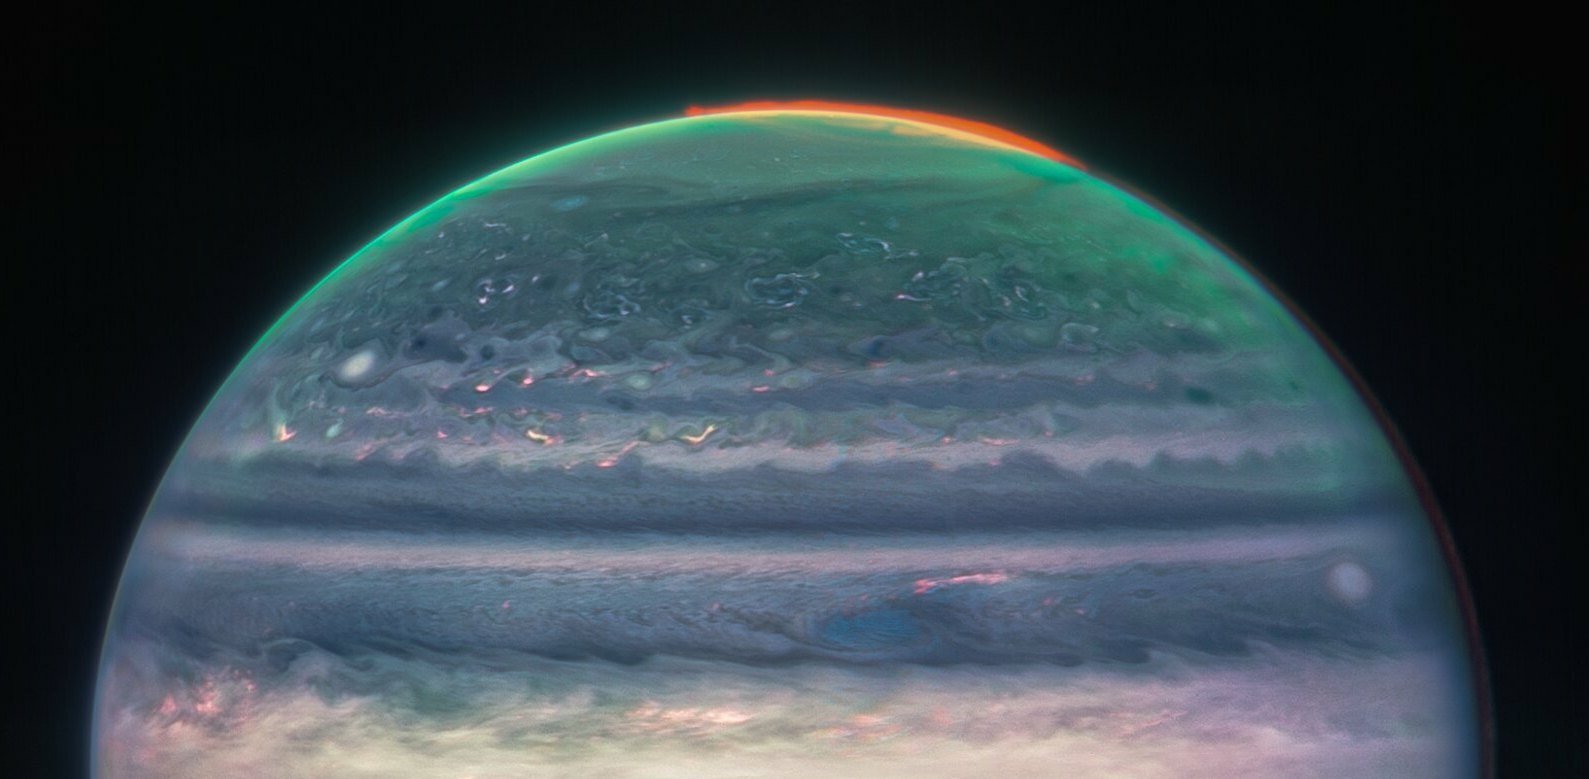 Jupiter's northern aurora